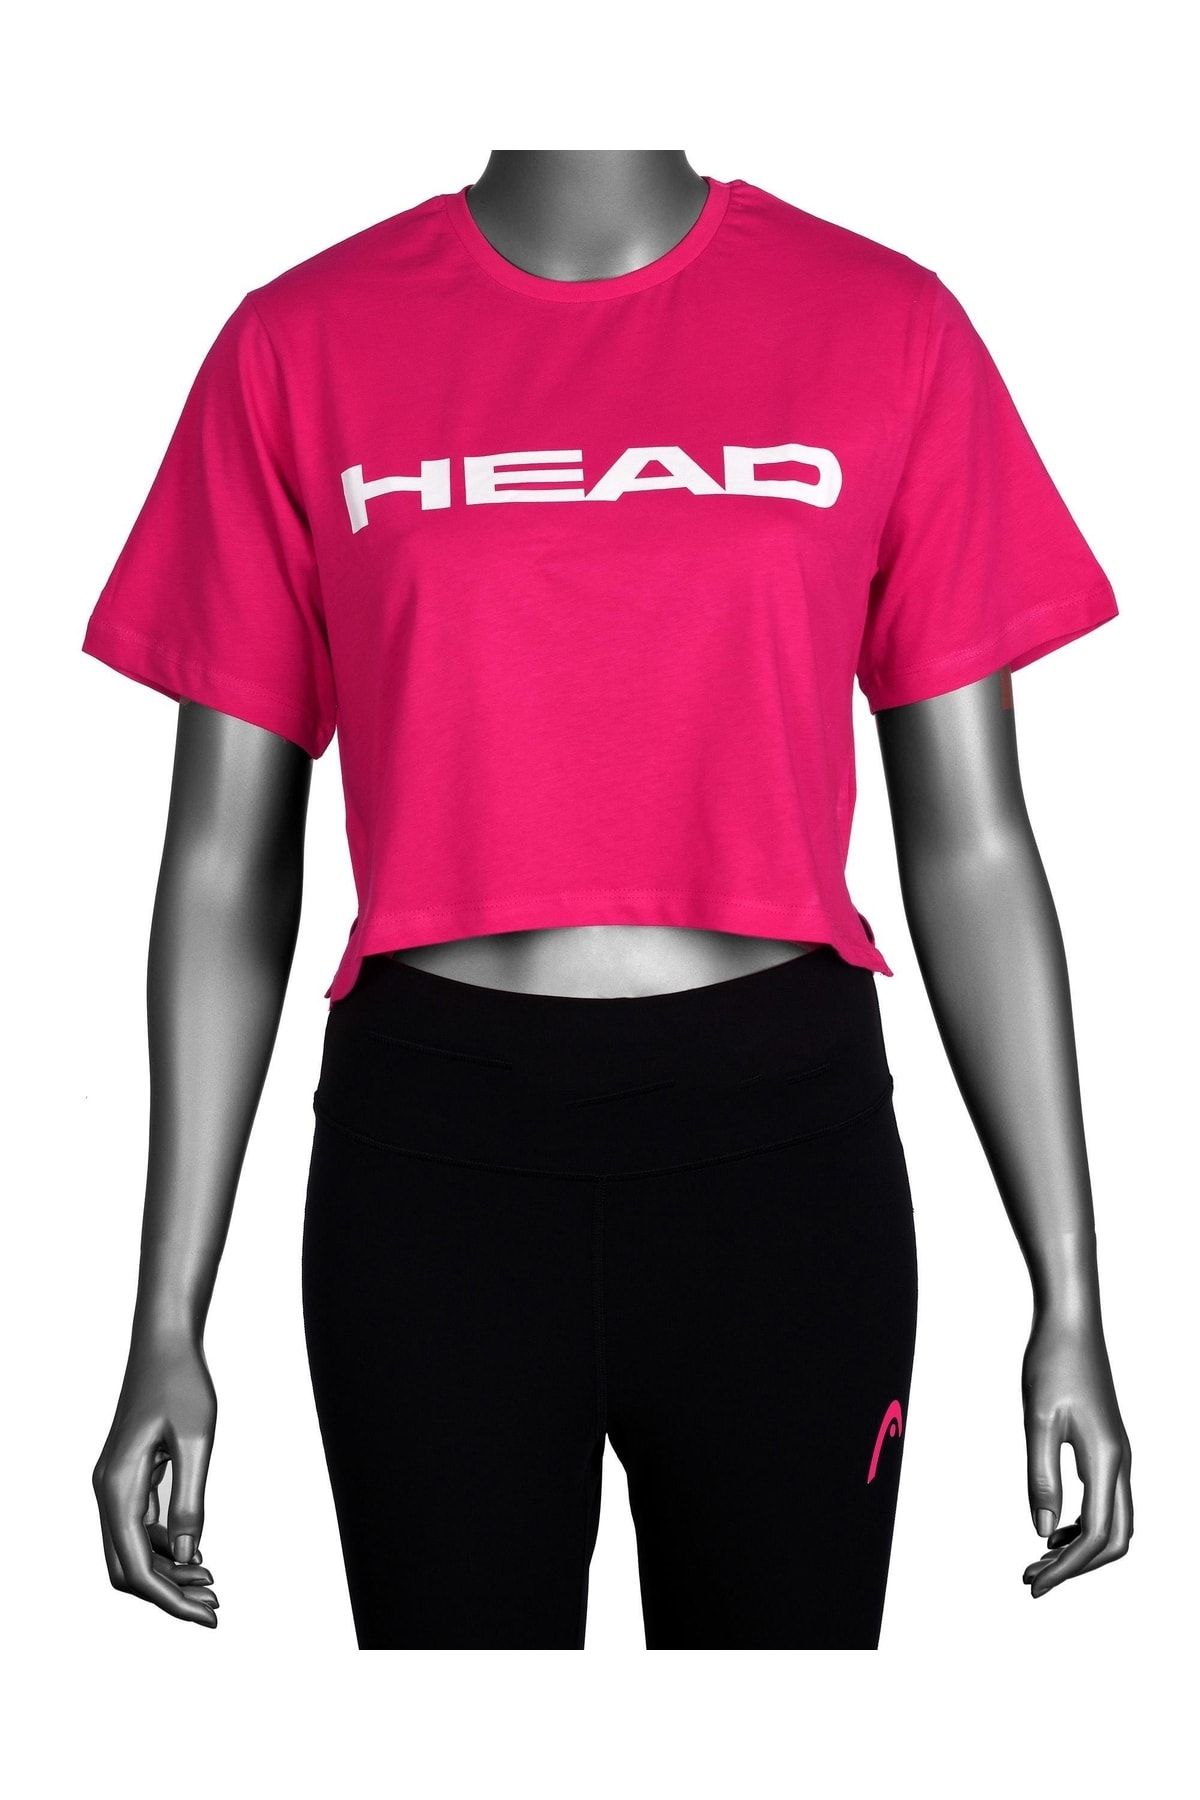 Head Kadın Pembe Logo Baskılı Pamuklu Bisiklet Yaka Spor Şık Croptop Spor T-shirt Tenis Tişört